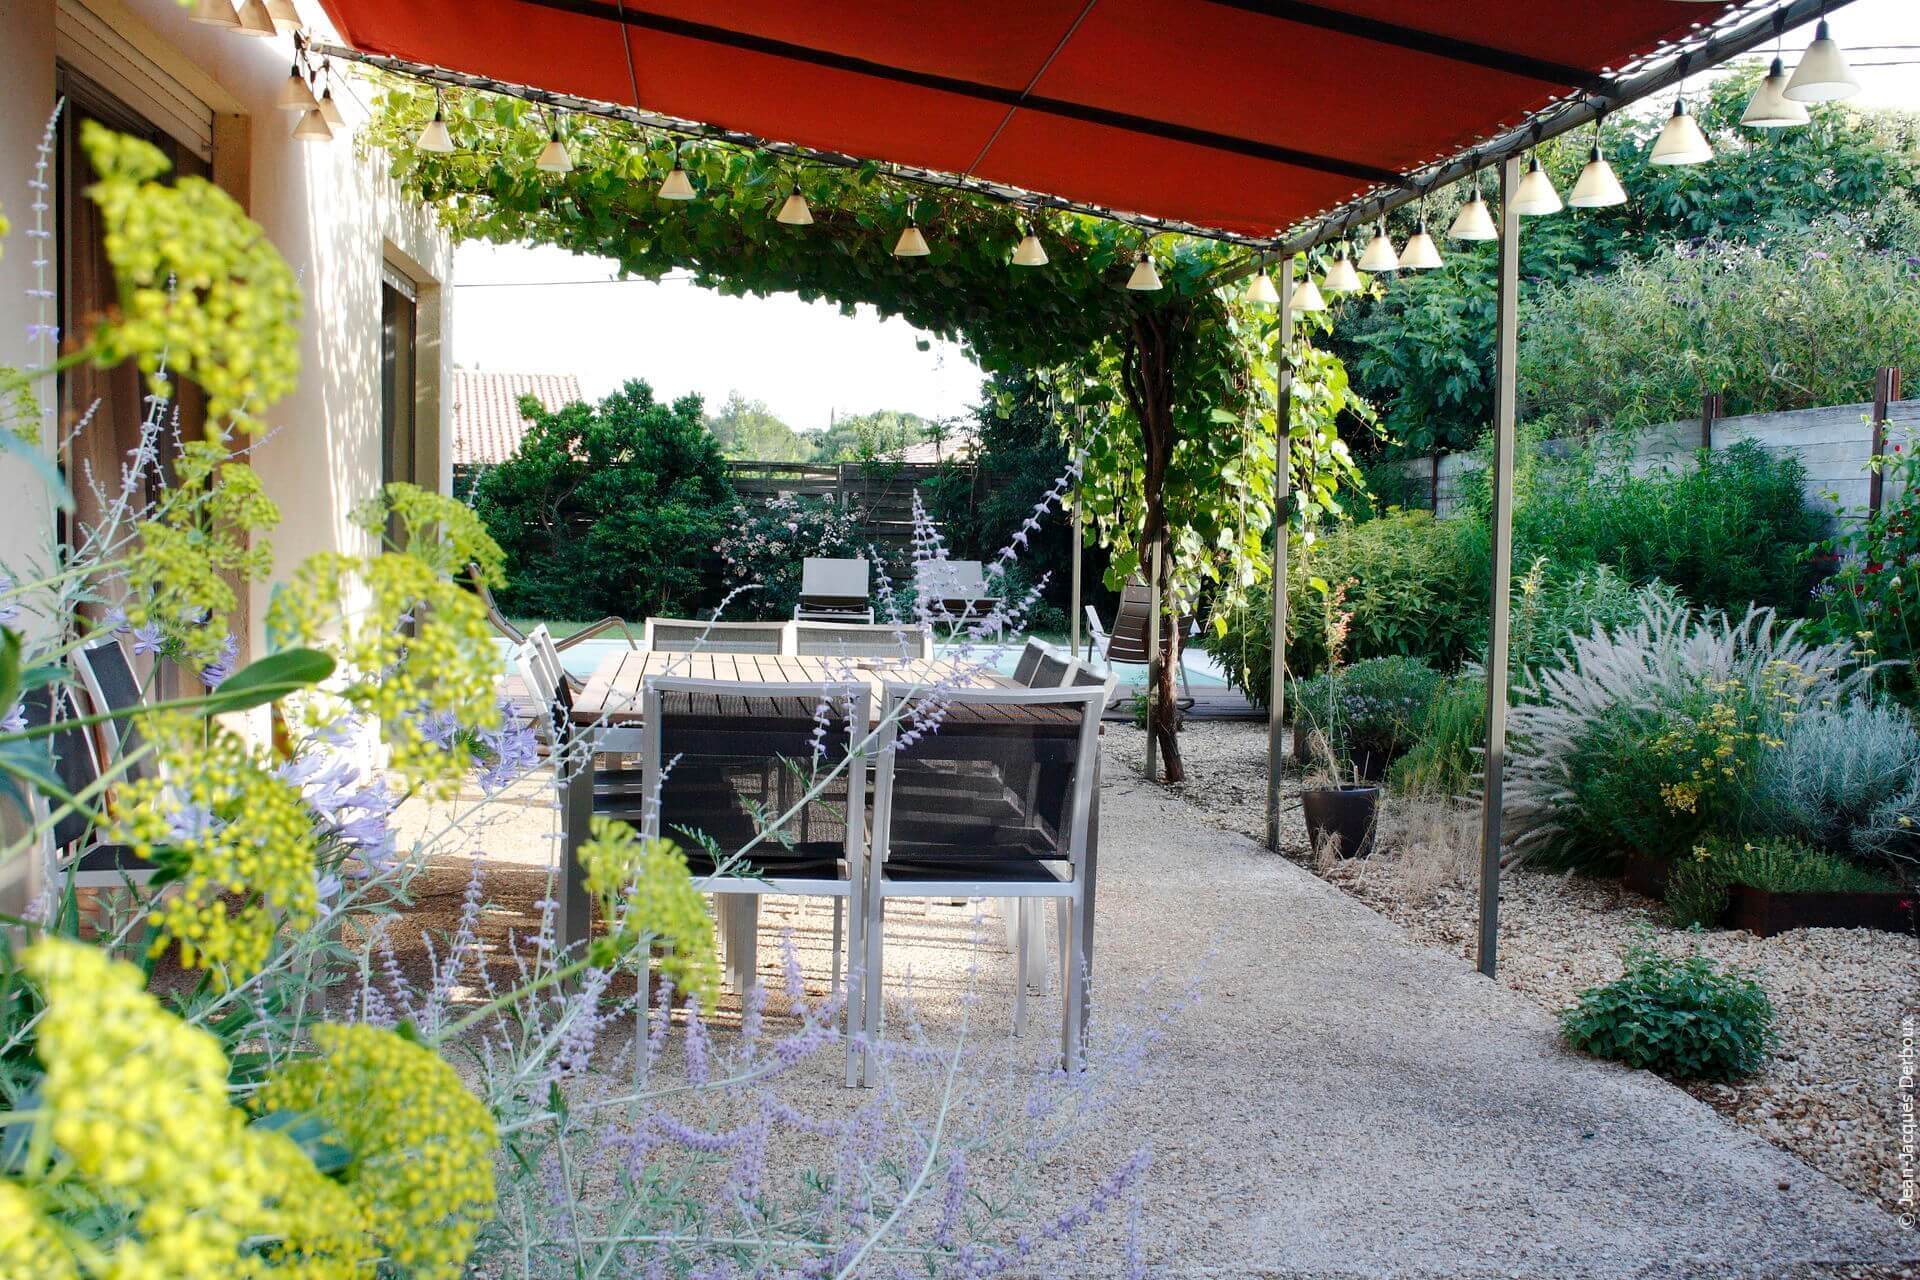 Terrasse pour prendre les repas, mobilier contemporain, treille, ombrage toile imperméable, luminaire de jardin lampion, ombrage vigne, jardin sec.